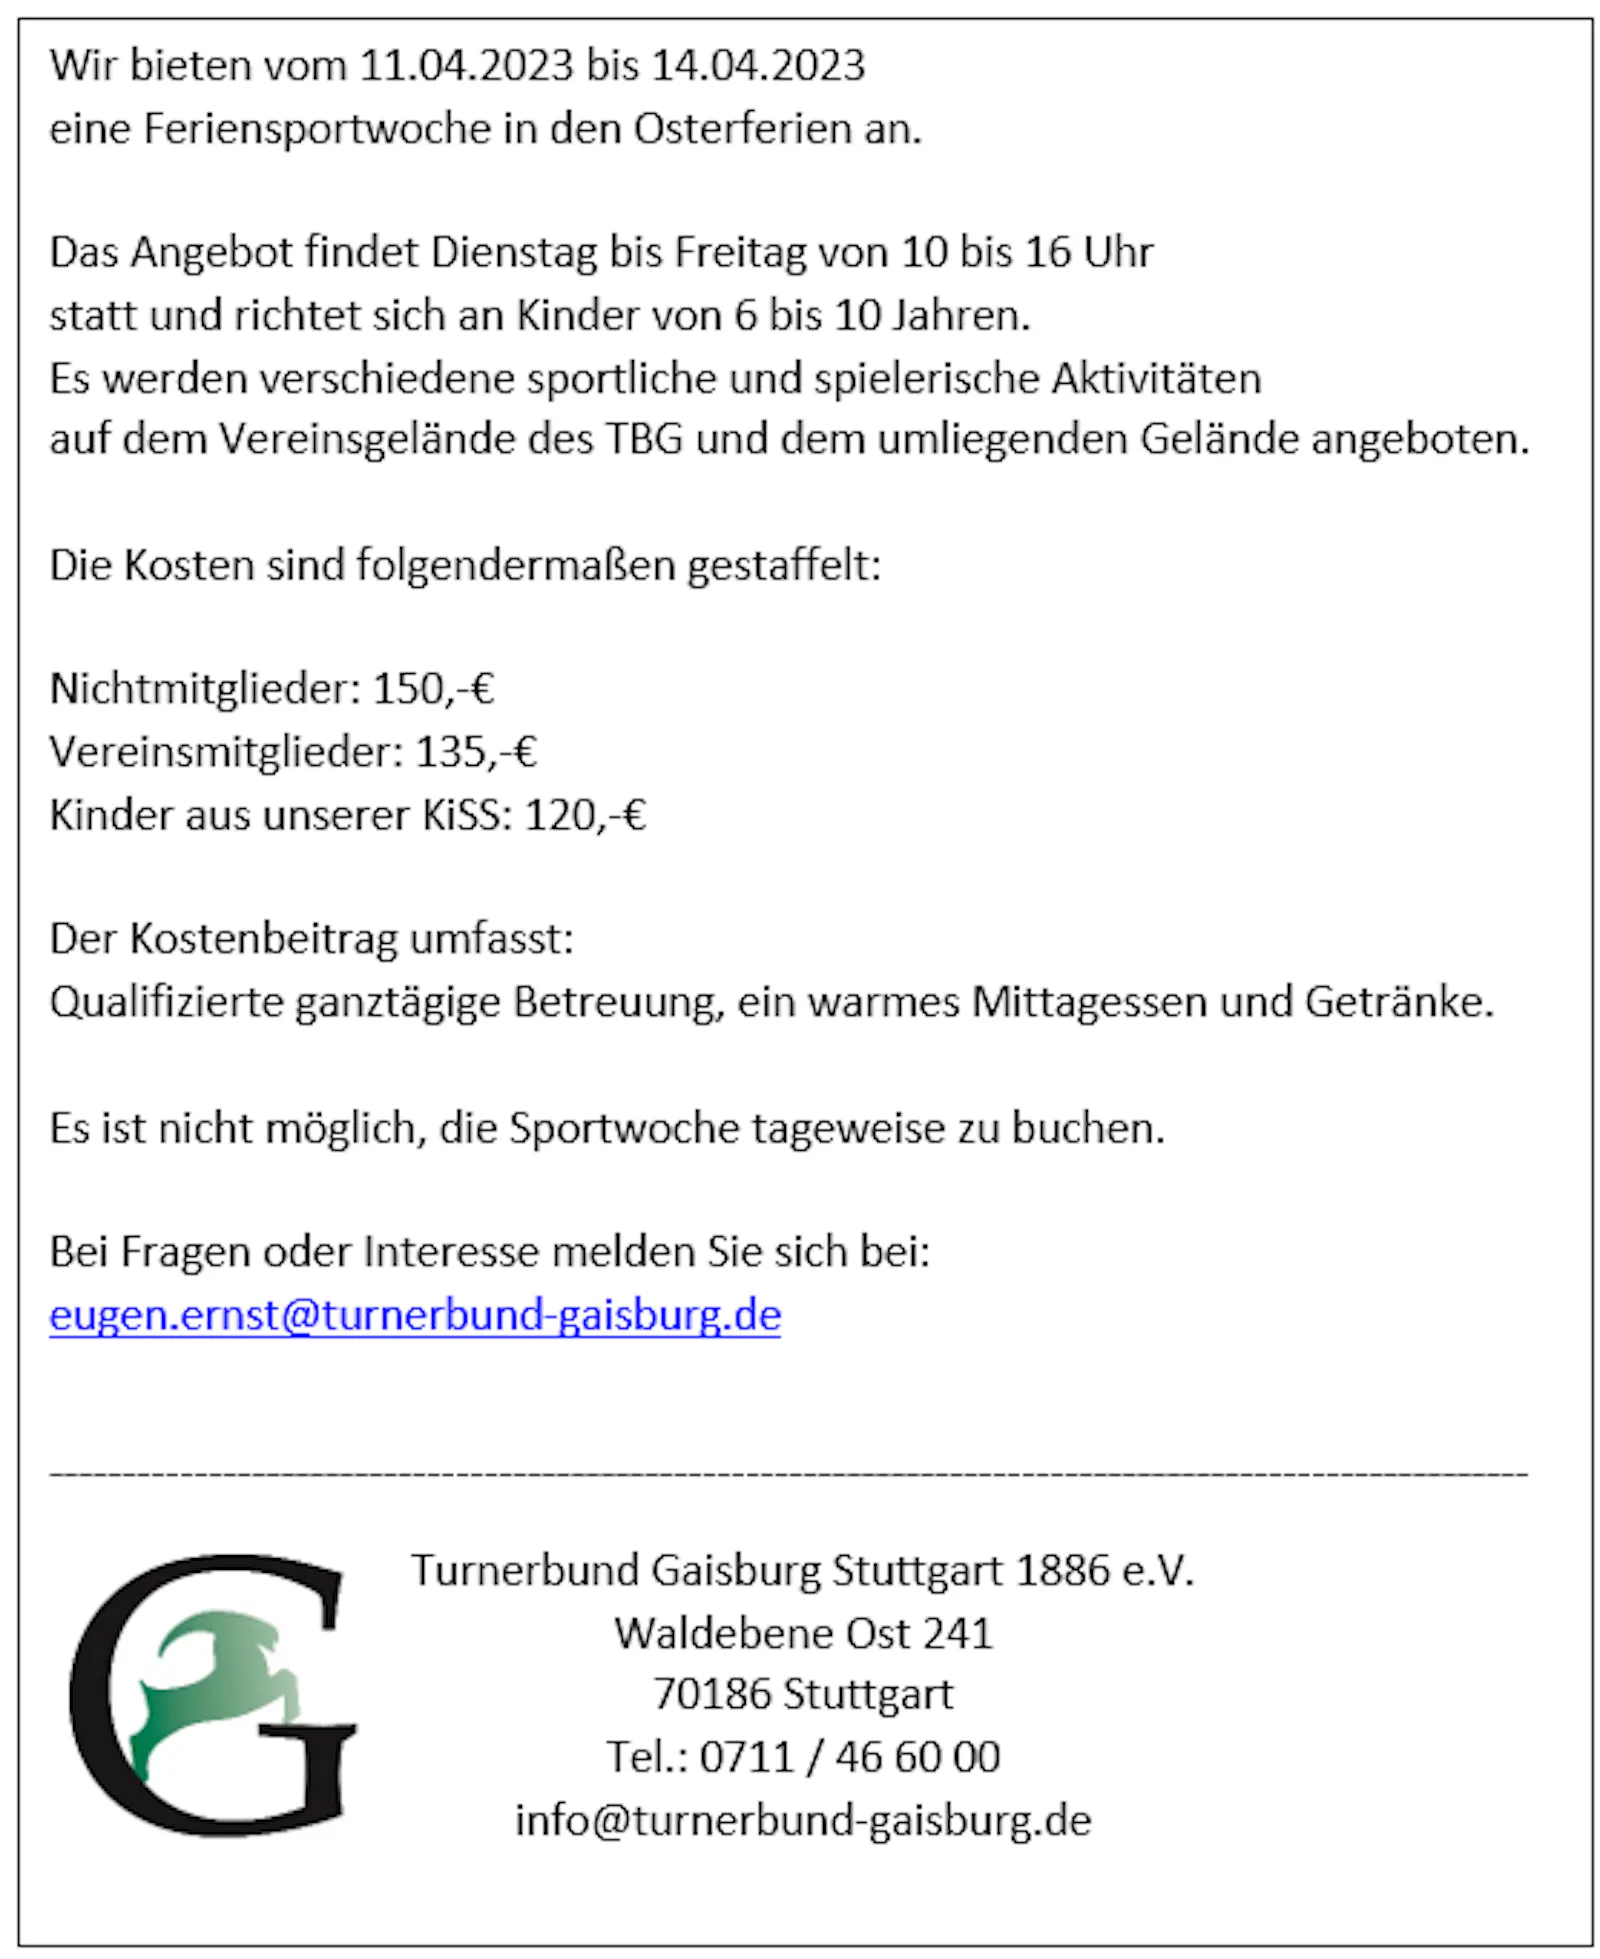 Infos des Turnerbund Gaisburg über seine Feriensportwoche von 11. bis 14. April.